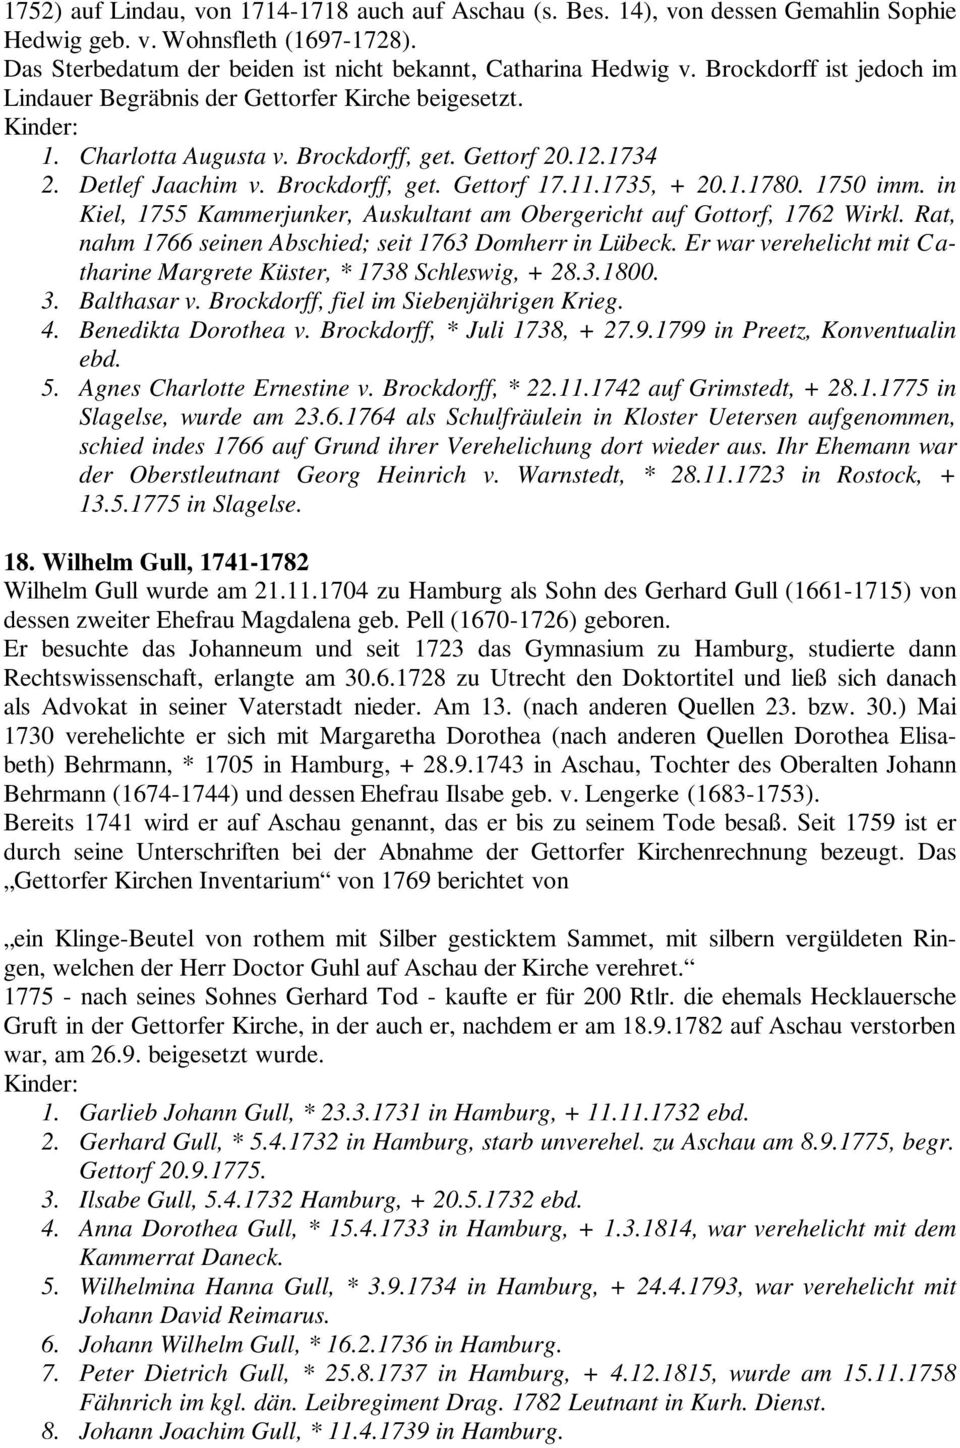 1735, + 20.1.1780. 1750 imm. in Kiel, 1755 Kammerjunker, Auskultant am Obergericht auf Gottorf, 1762 Wirkl. Rat, nahm 1766 seinen Abschied; seit 1763 Domherr in Lübeck.